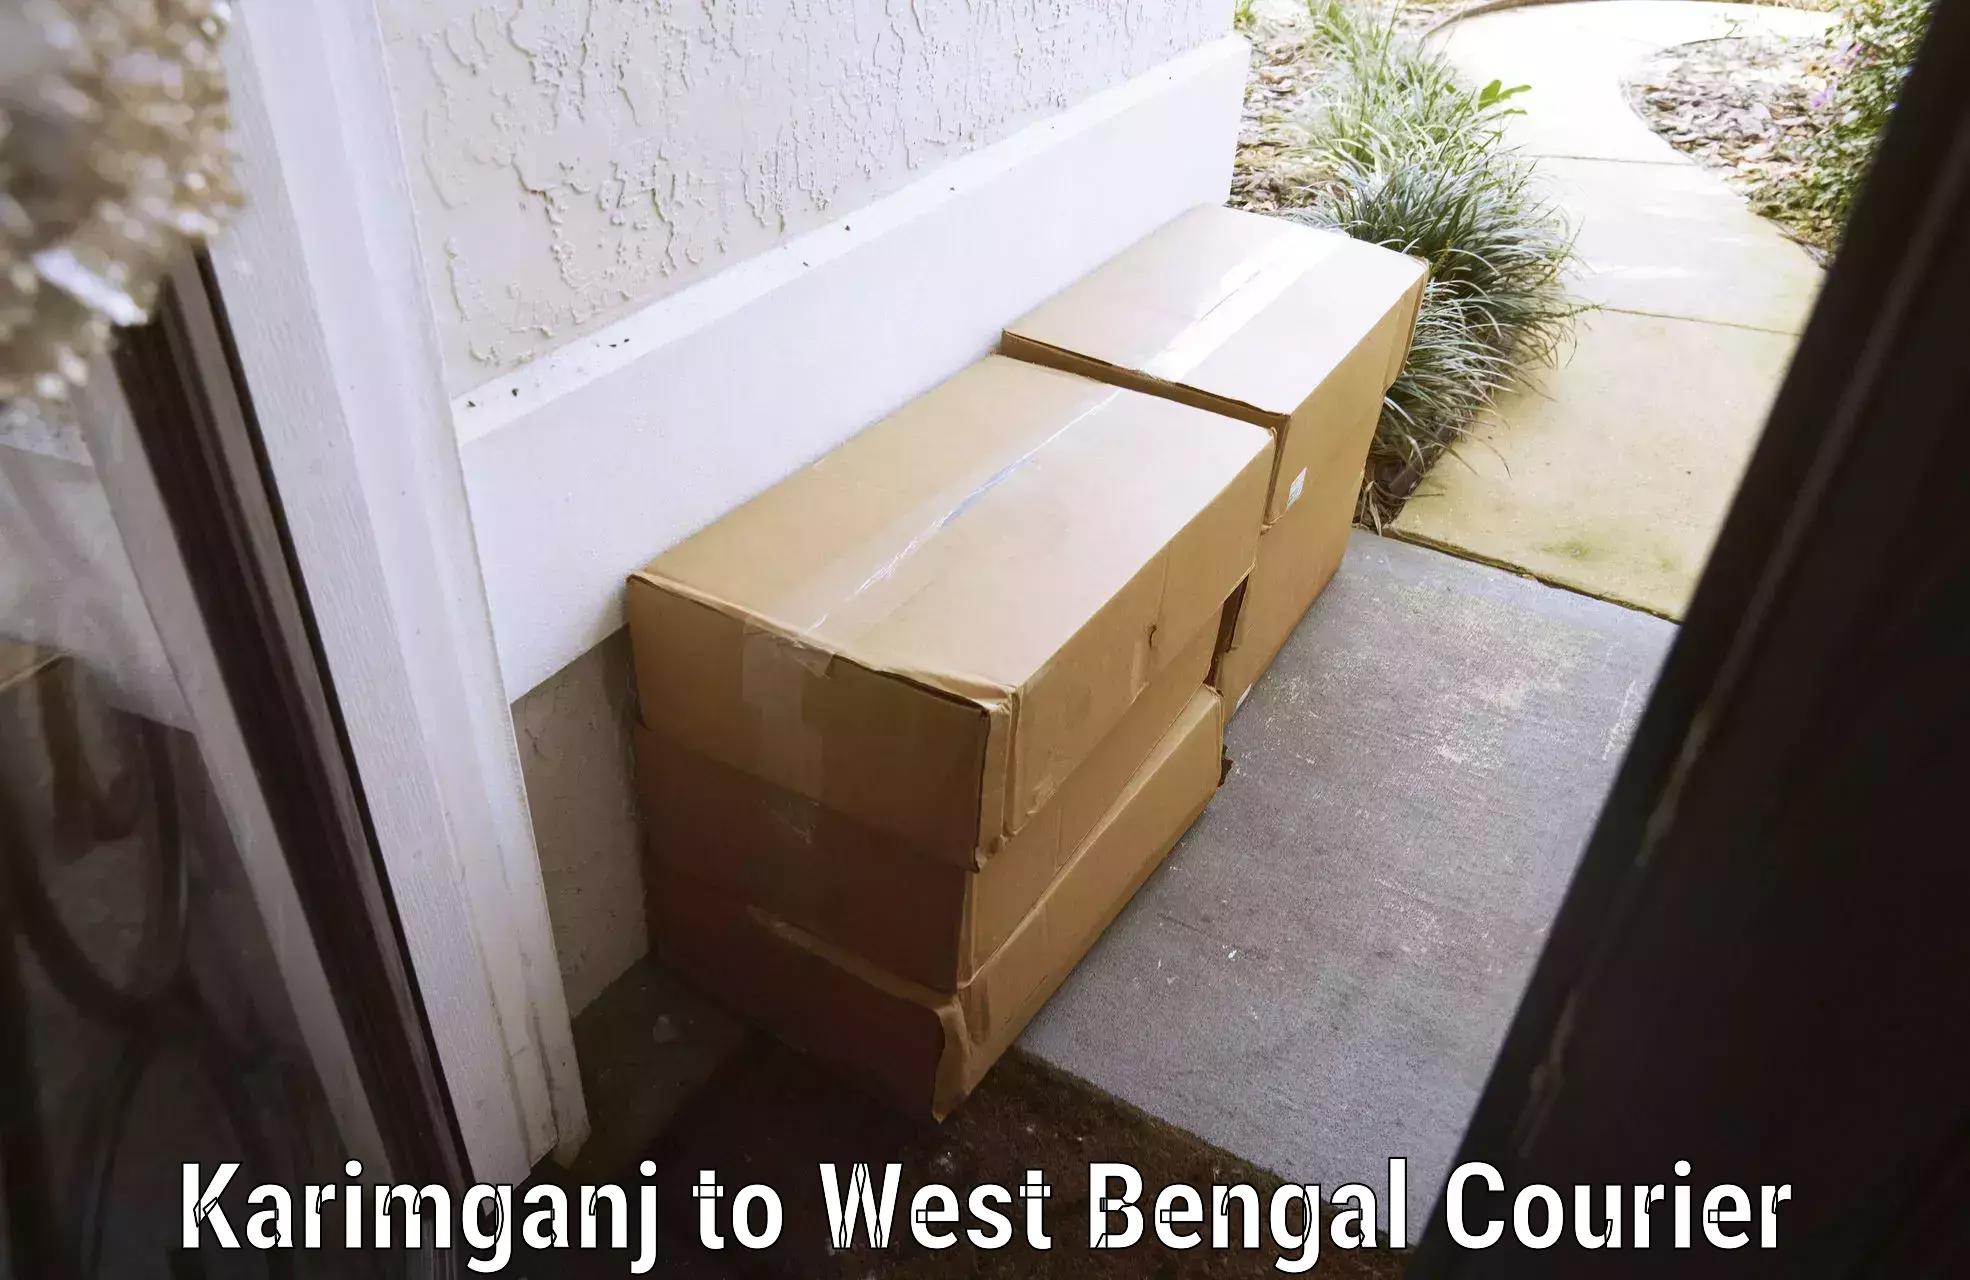 Luggage shipment specialists Karimganj to Balurghat